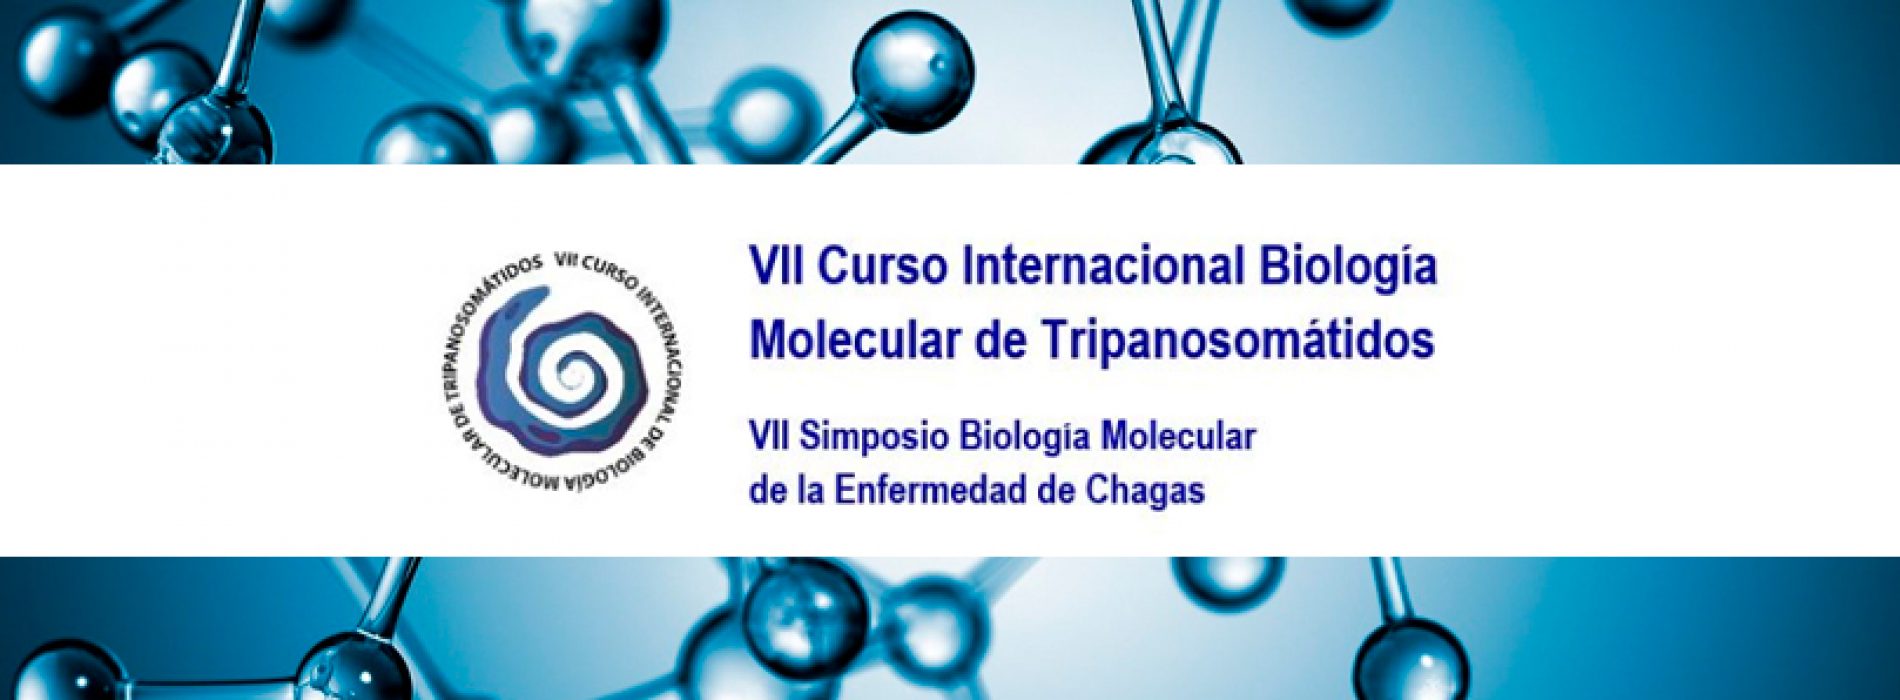 VII Curso Internacional Biología Molecular de Tripanosomátidos